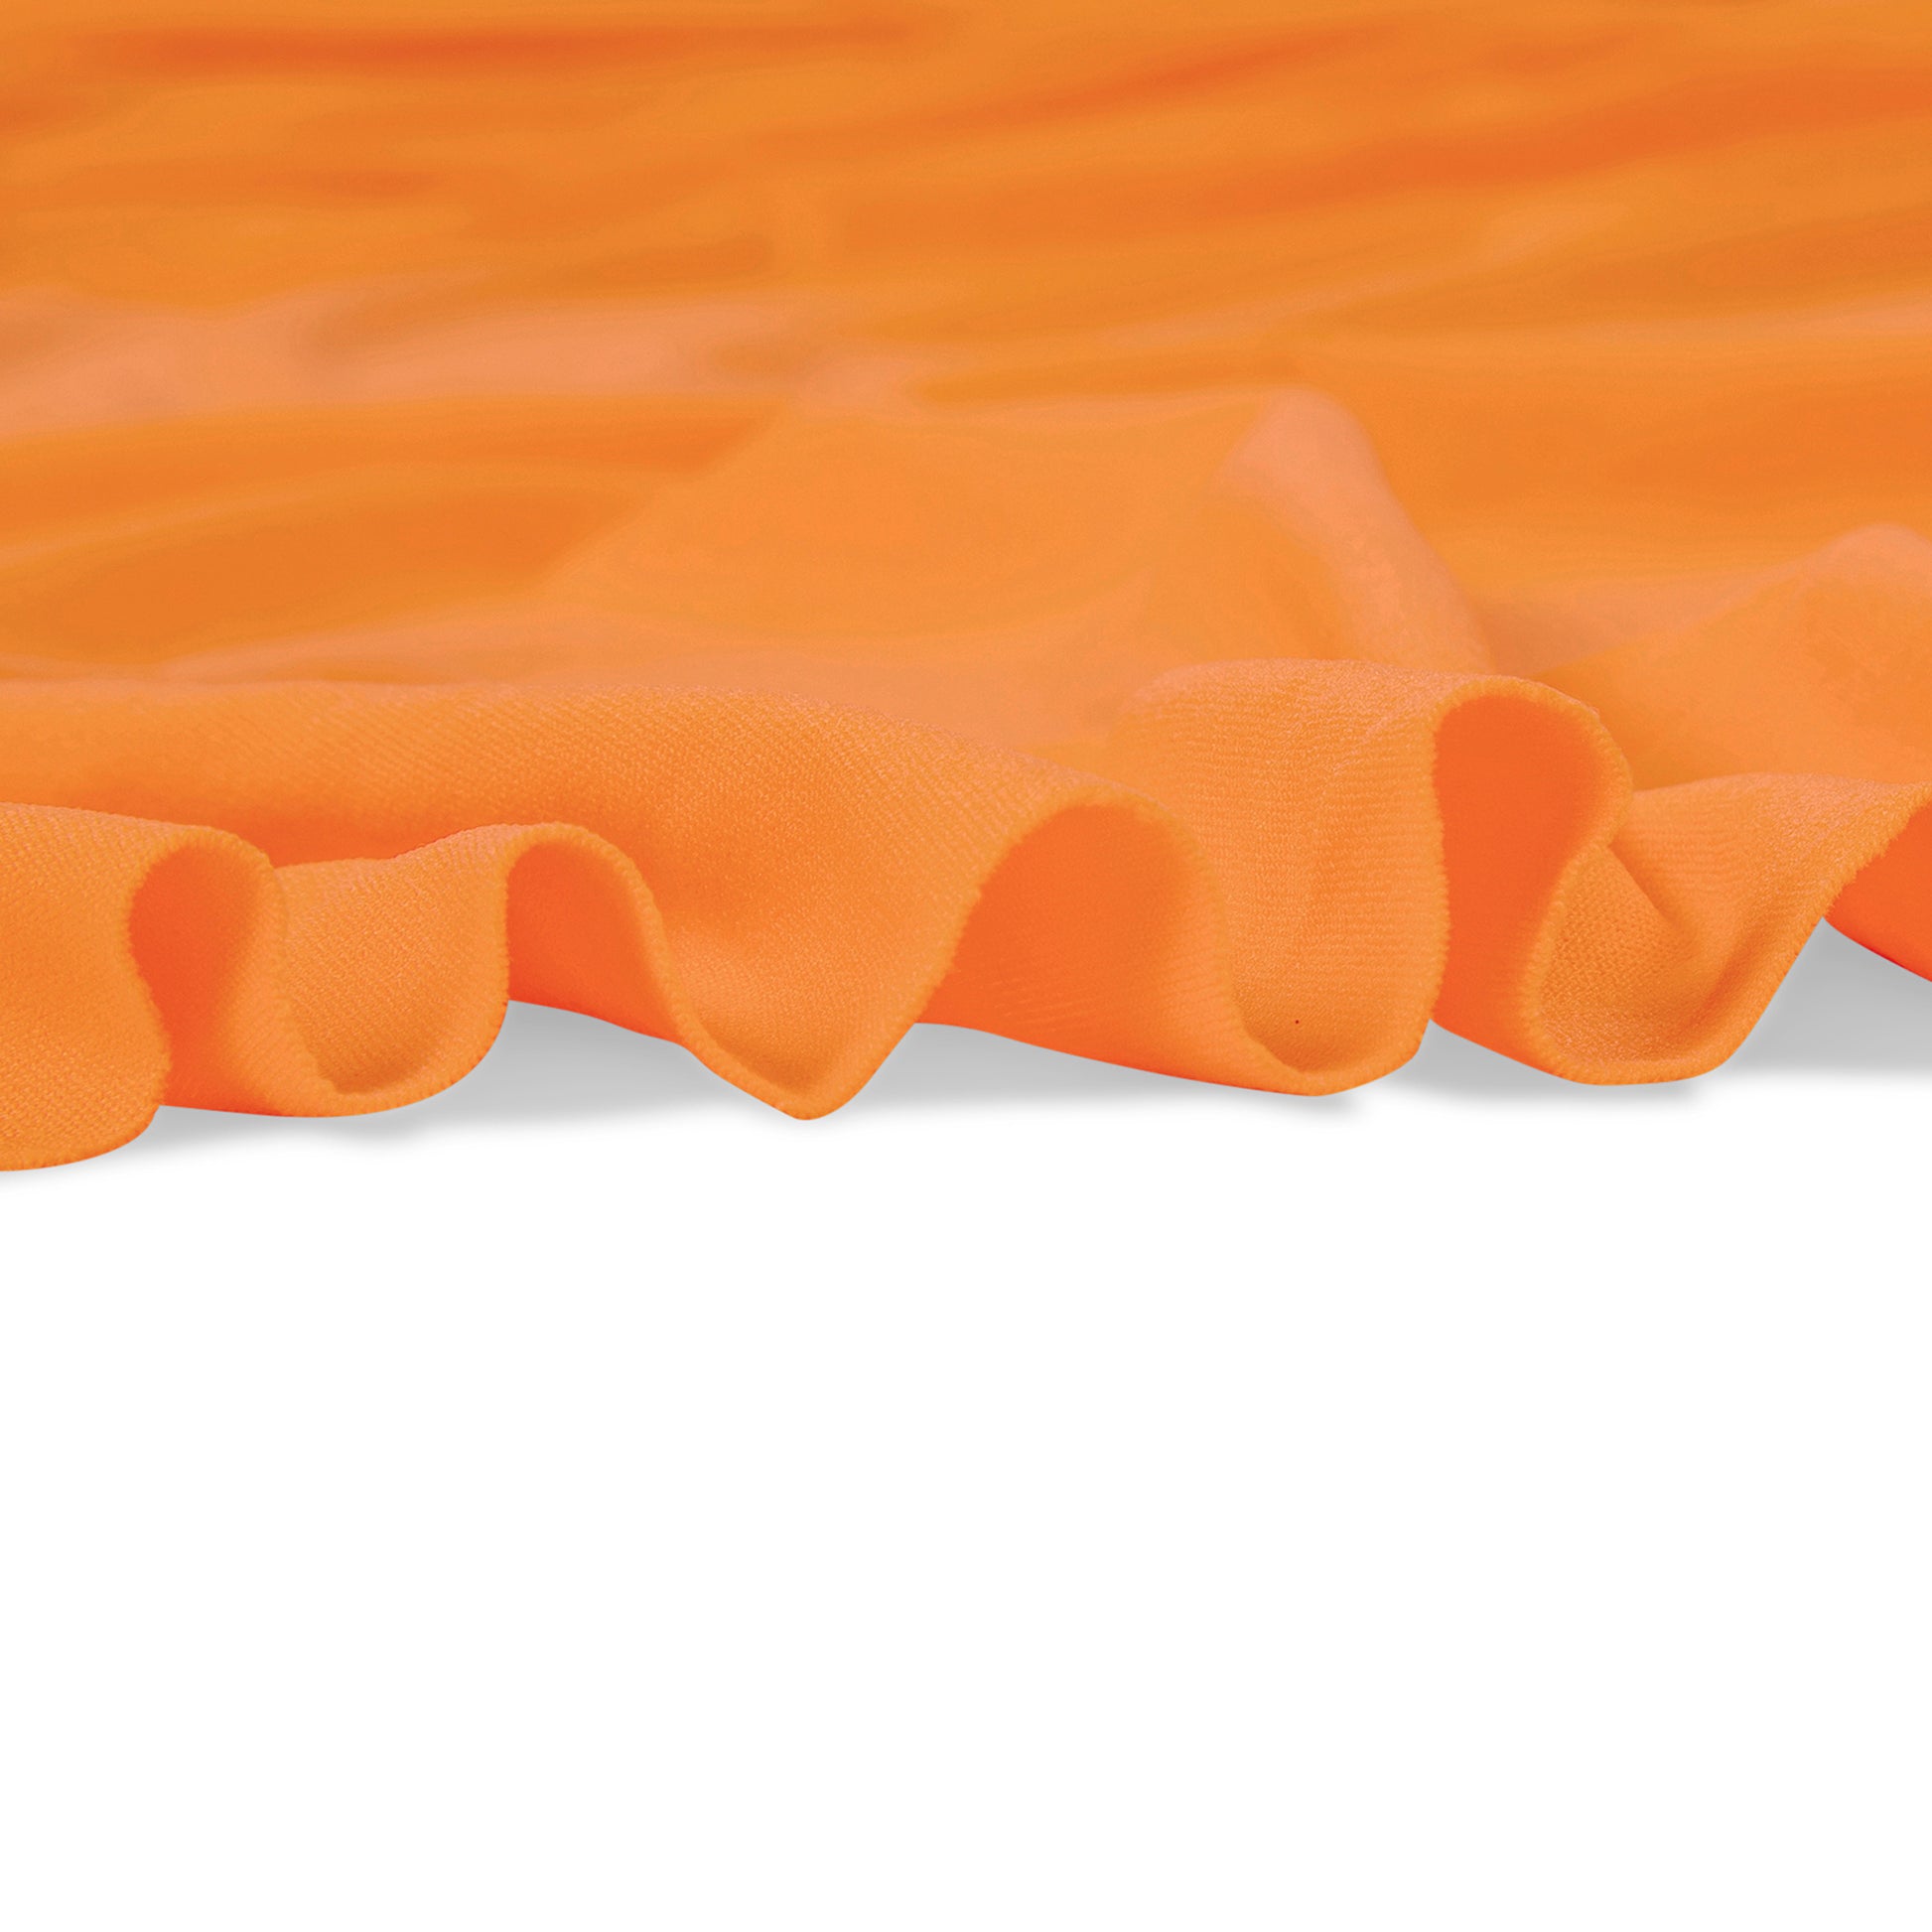 Spandex 4-way Stretch Backdrop Drape Curtain 12ft H x 60" W - Orange